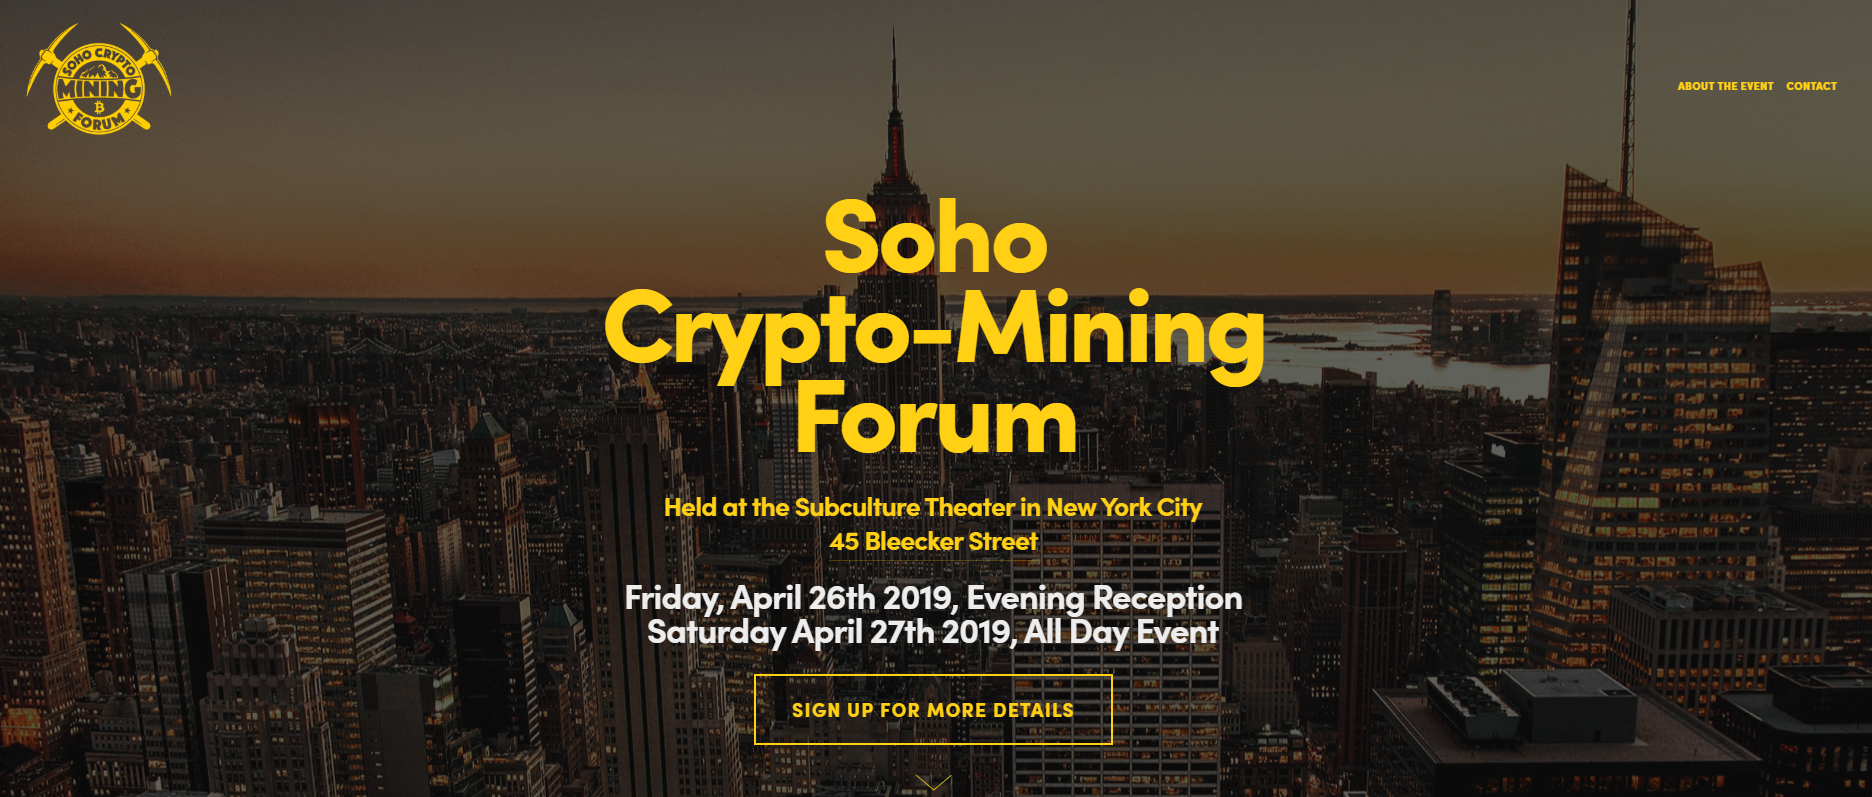 Soho Crypto-Mining Forum